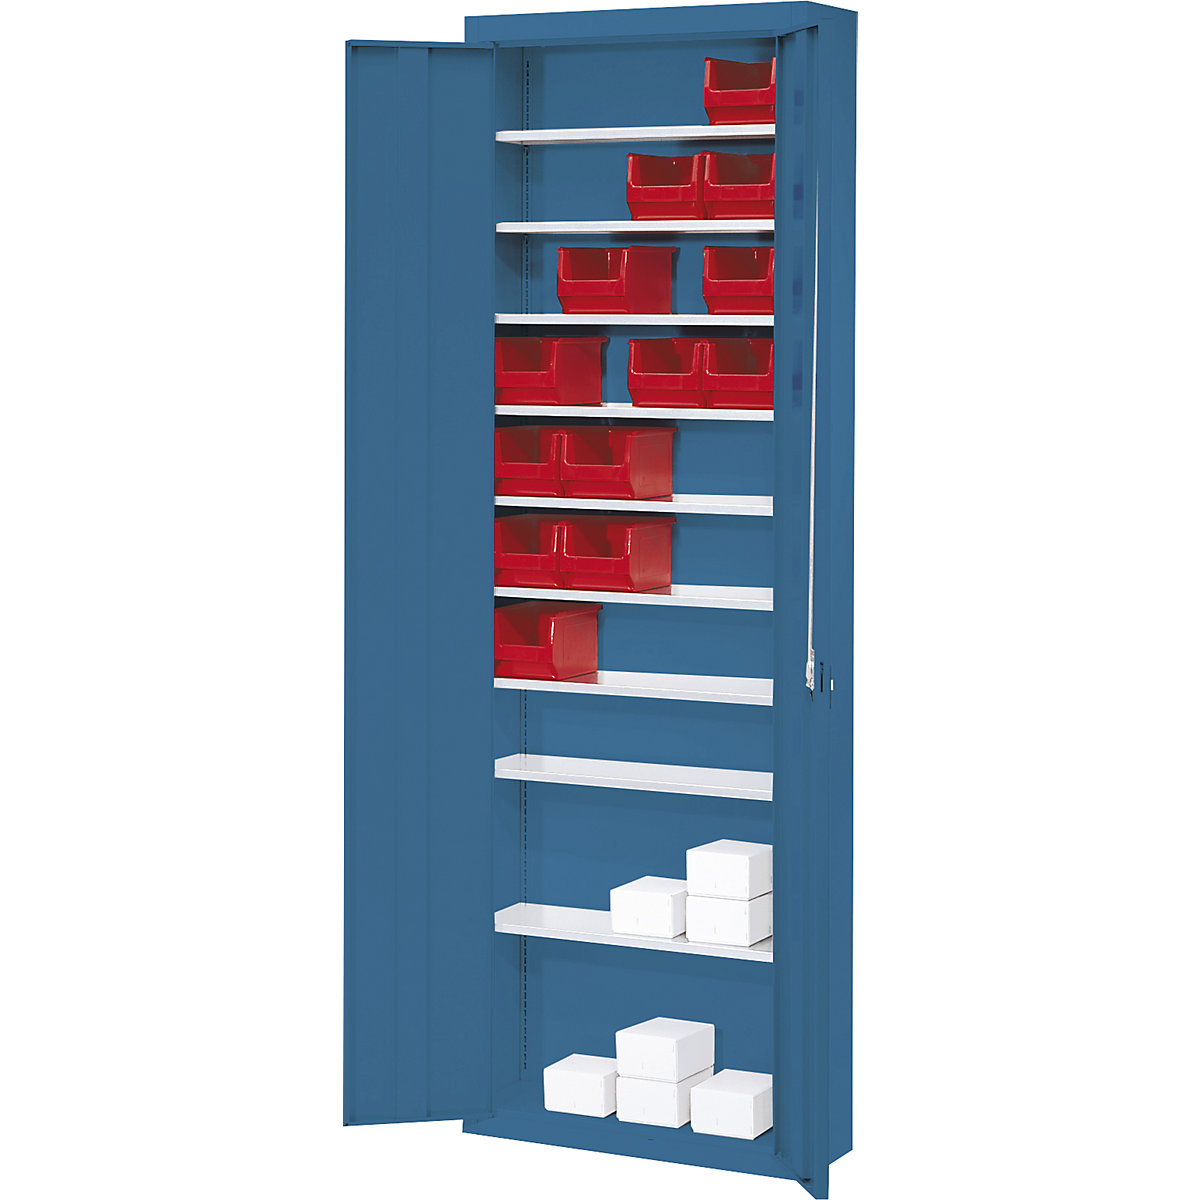 Armario-almacén, sin cajas visualizables – mauser (Imagen del producto 11)-10